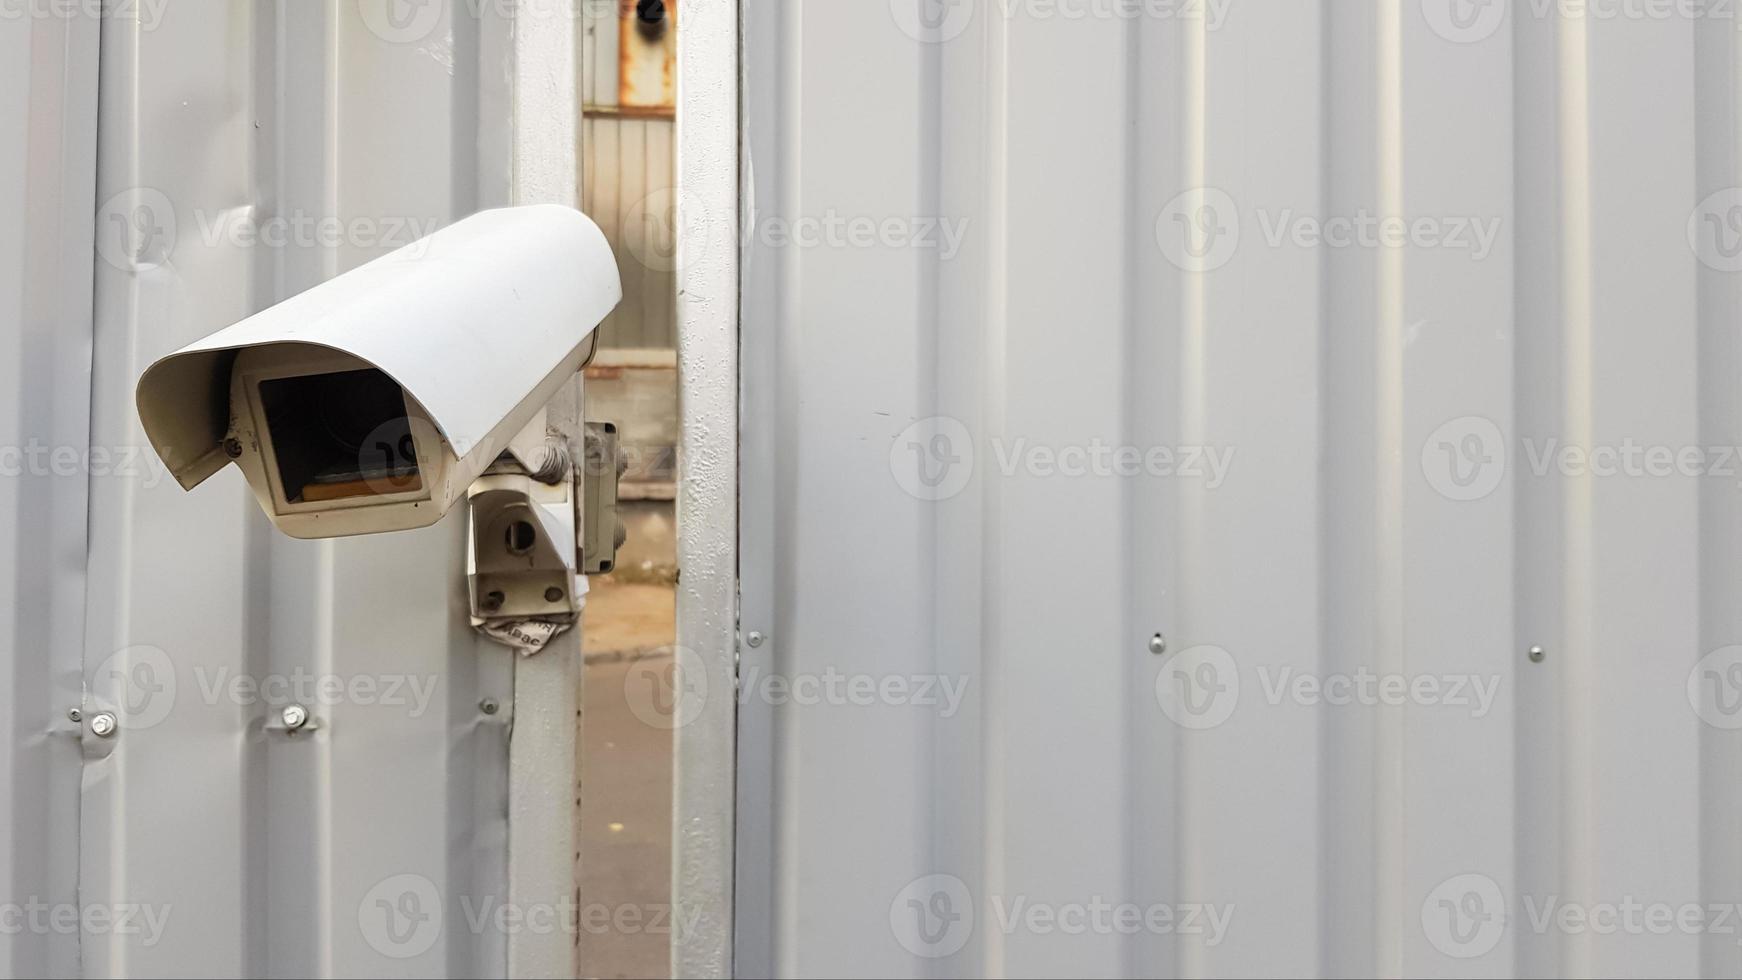 câmera de vigilância em cima de uma cerca de metal ondulado cinza foto